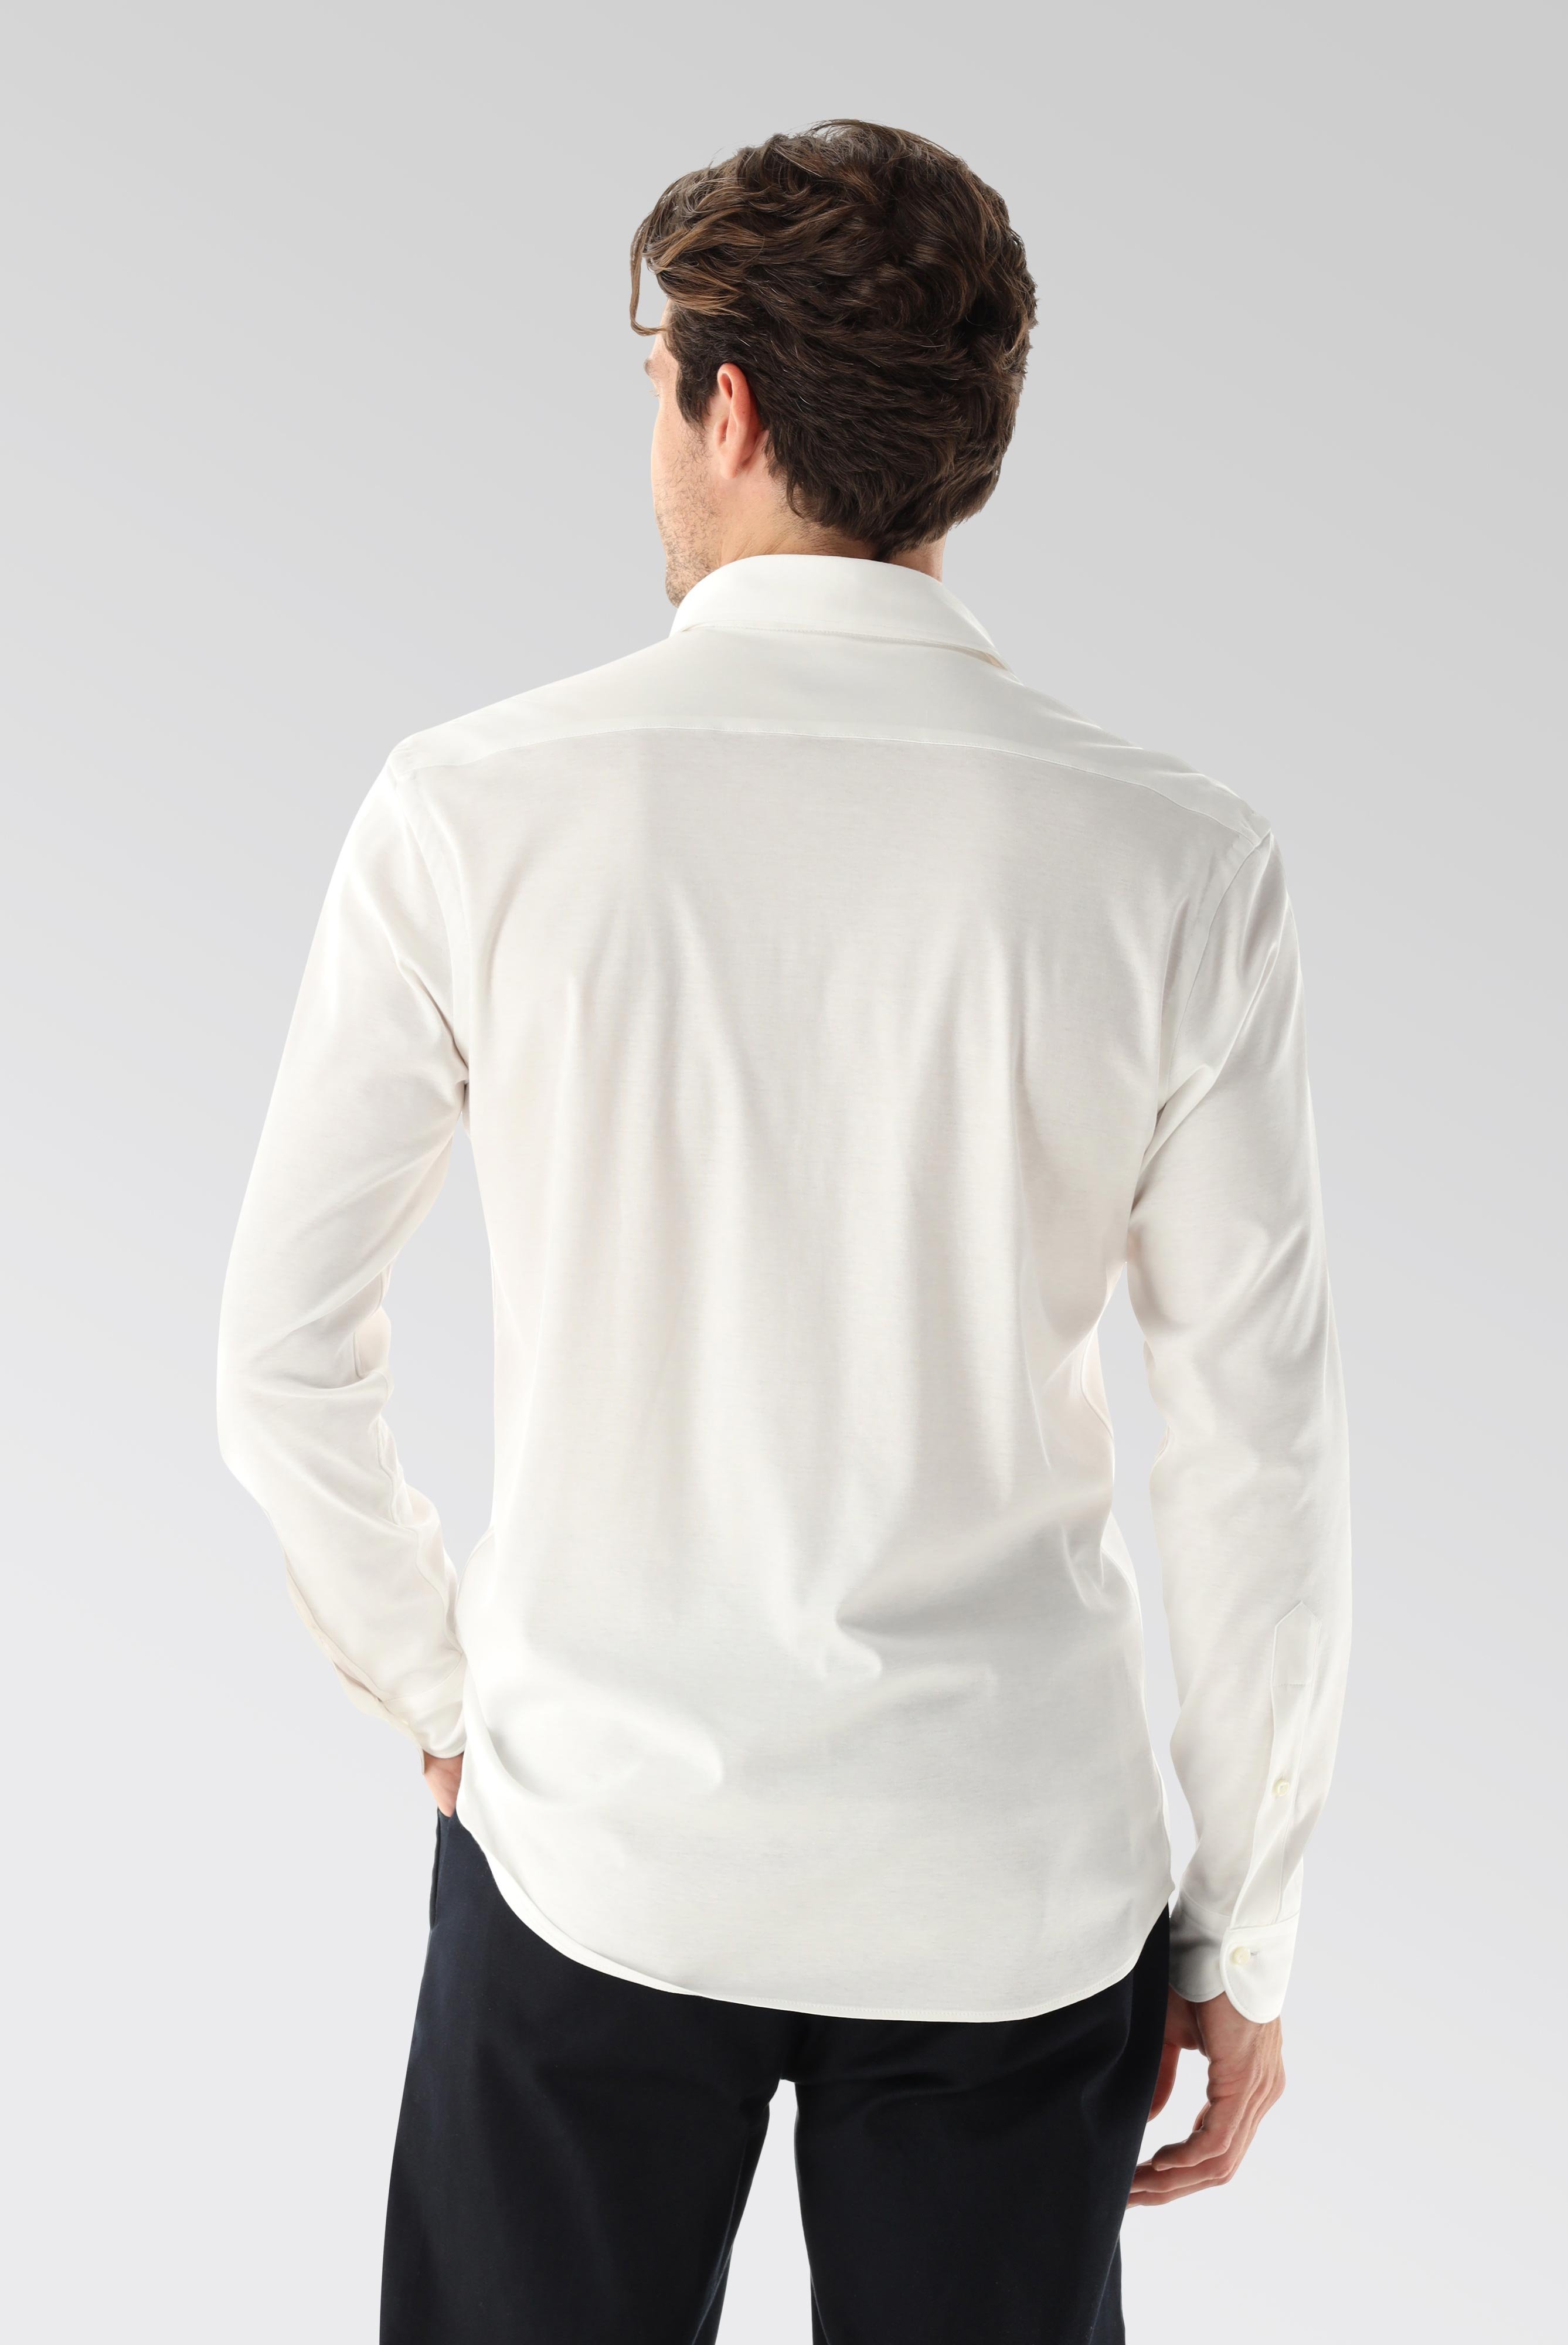 Bügelleichte Hemden+Jersey Hemd mit glänzender Optik Tailor Fit+20.1683.UC.180031.000.L